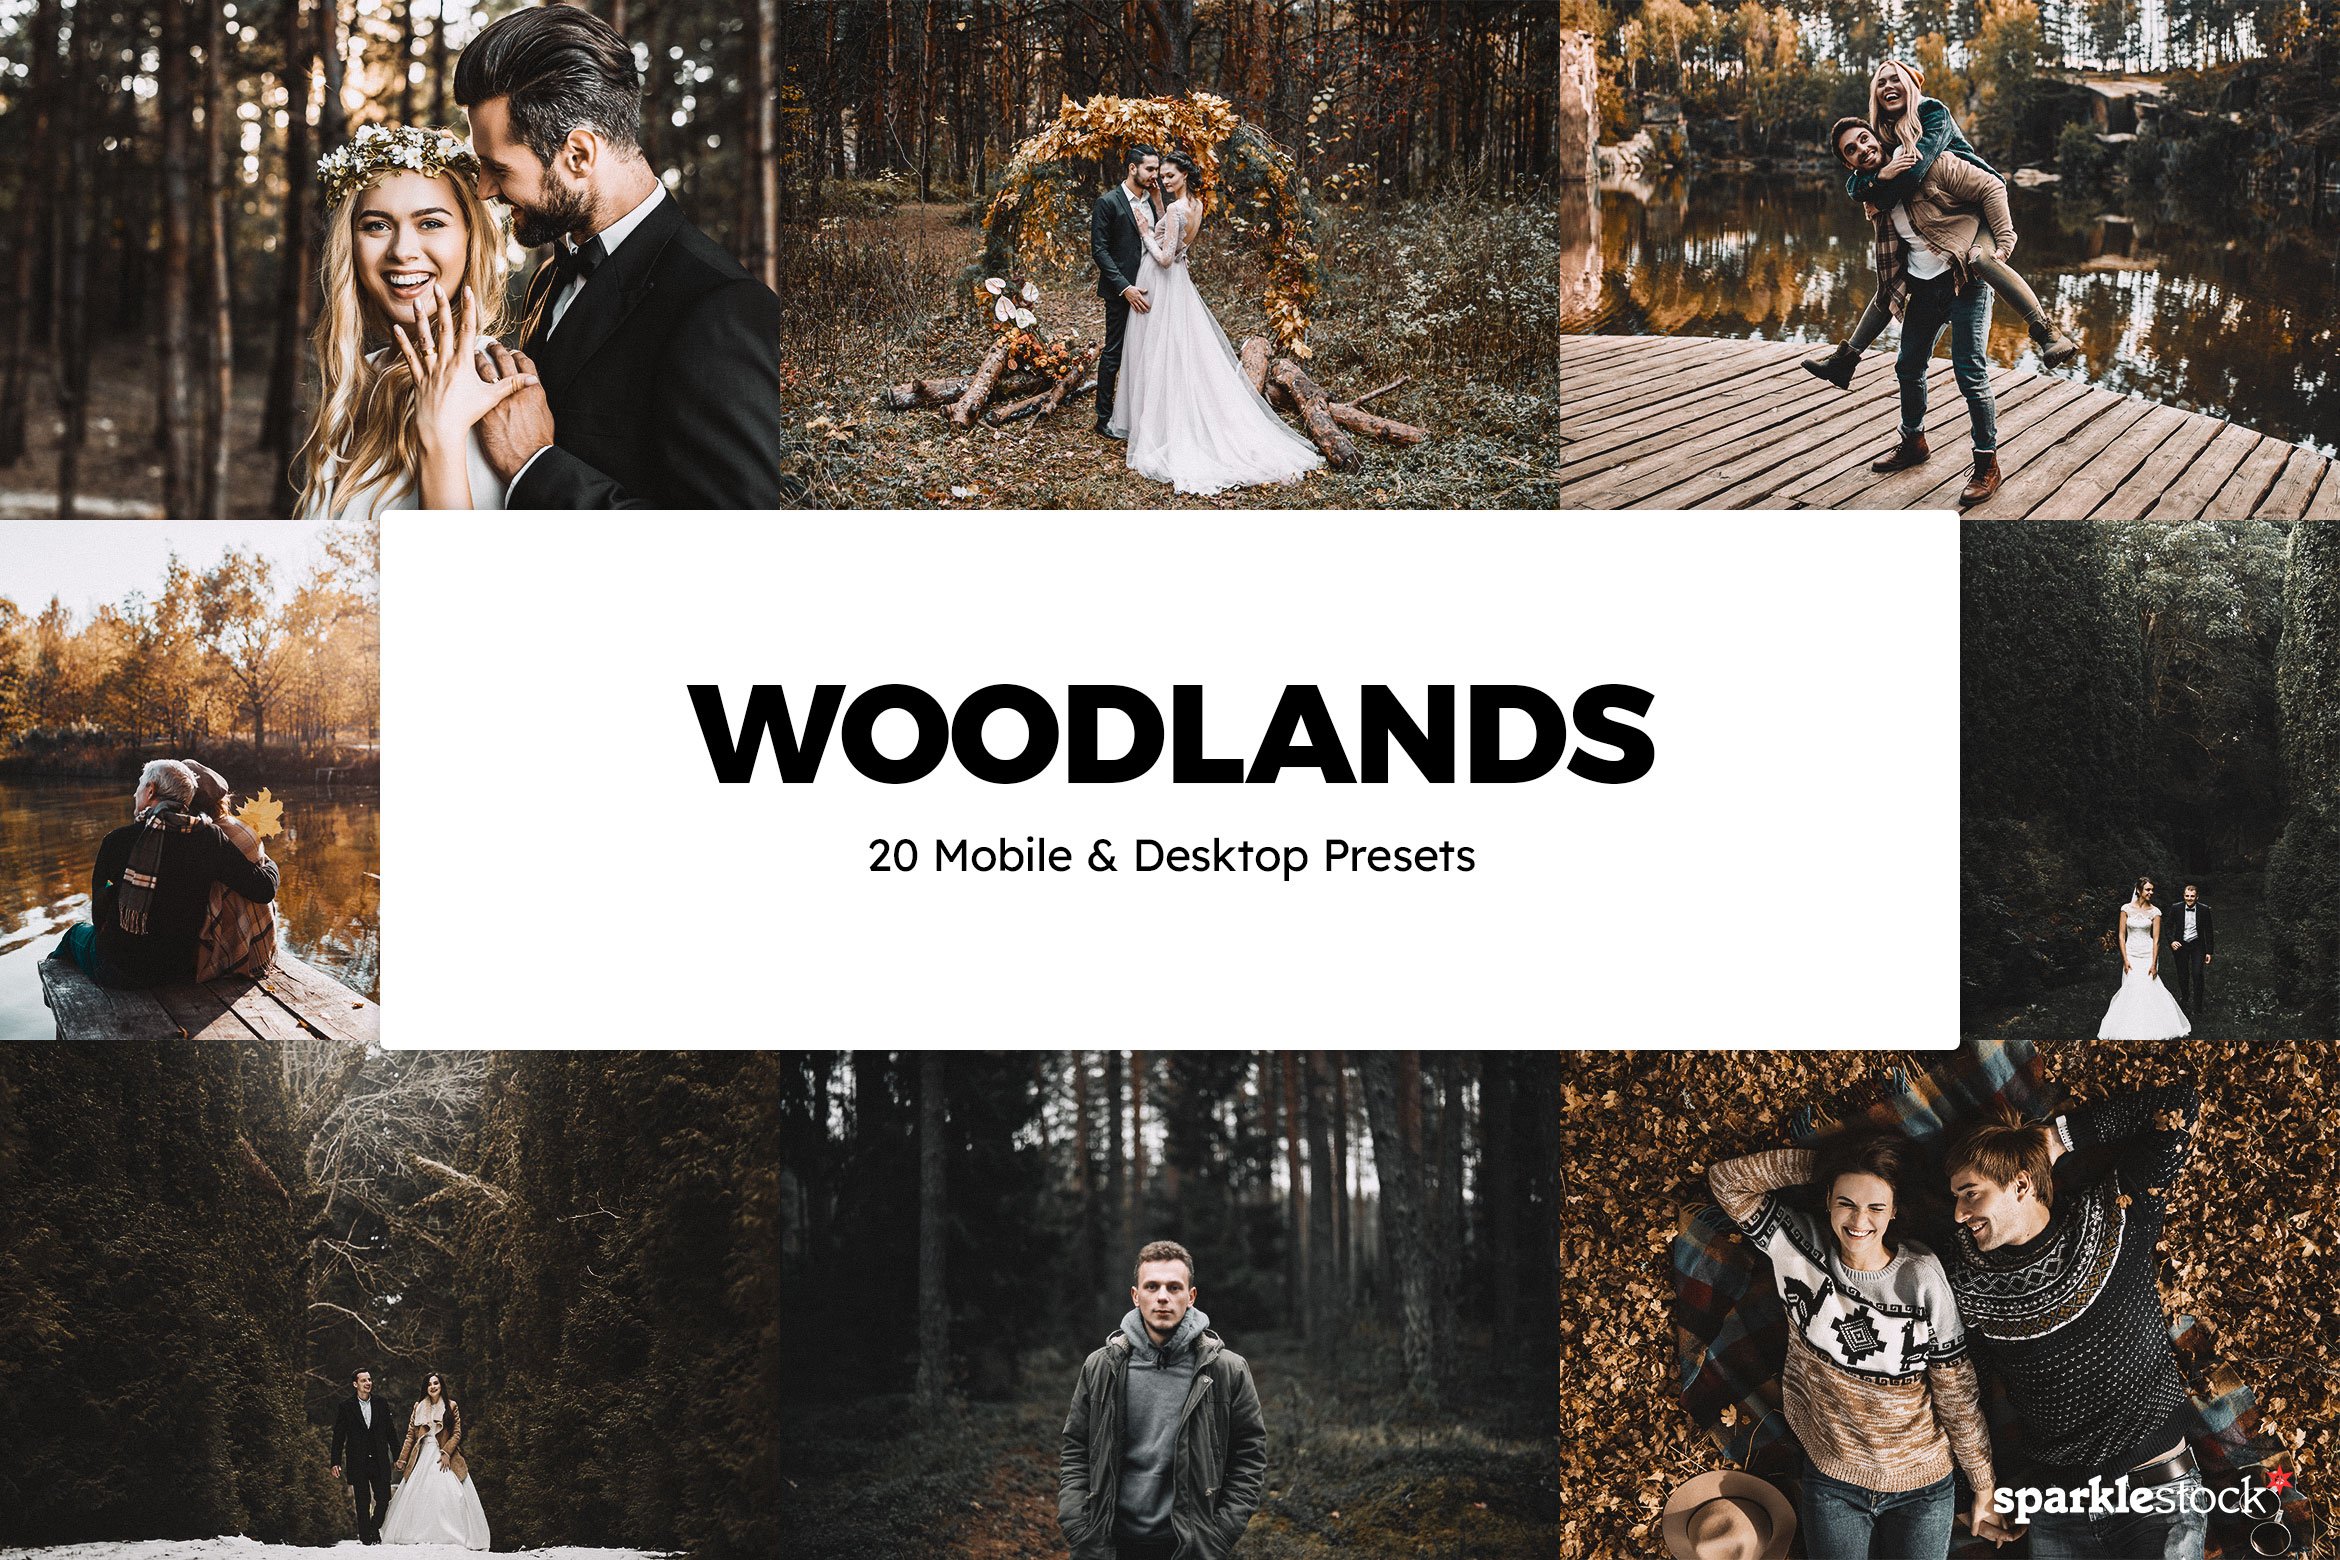 20 Woodlands Lightroom Presets & LUTcover image.